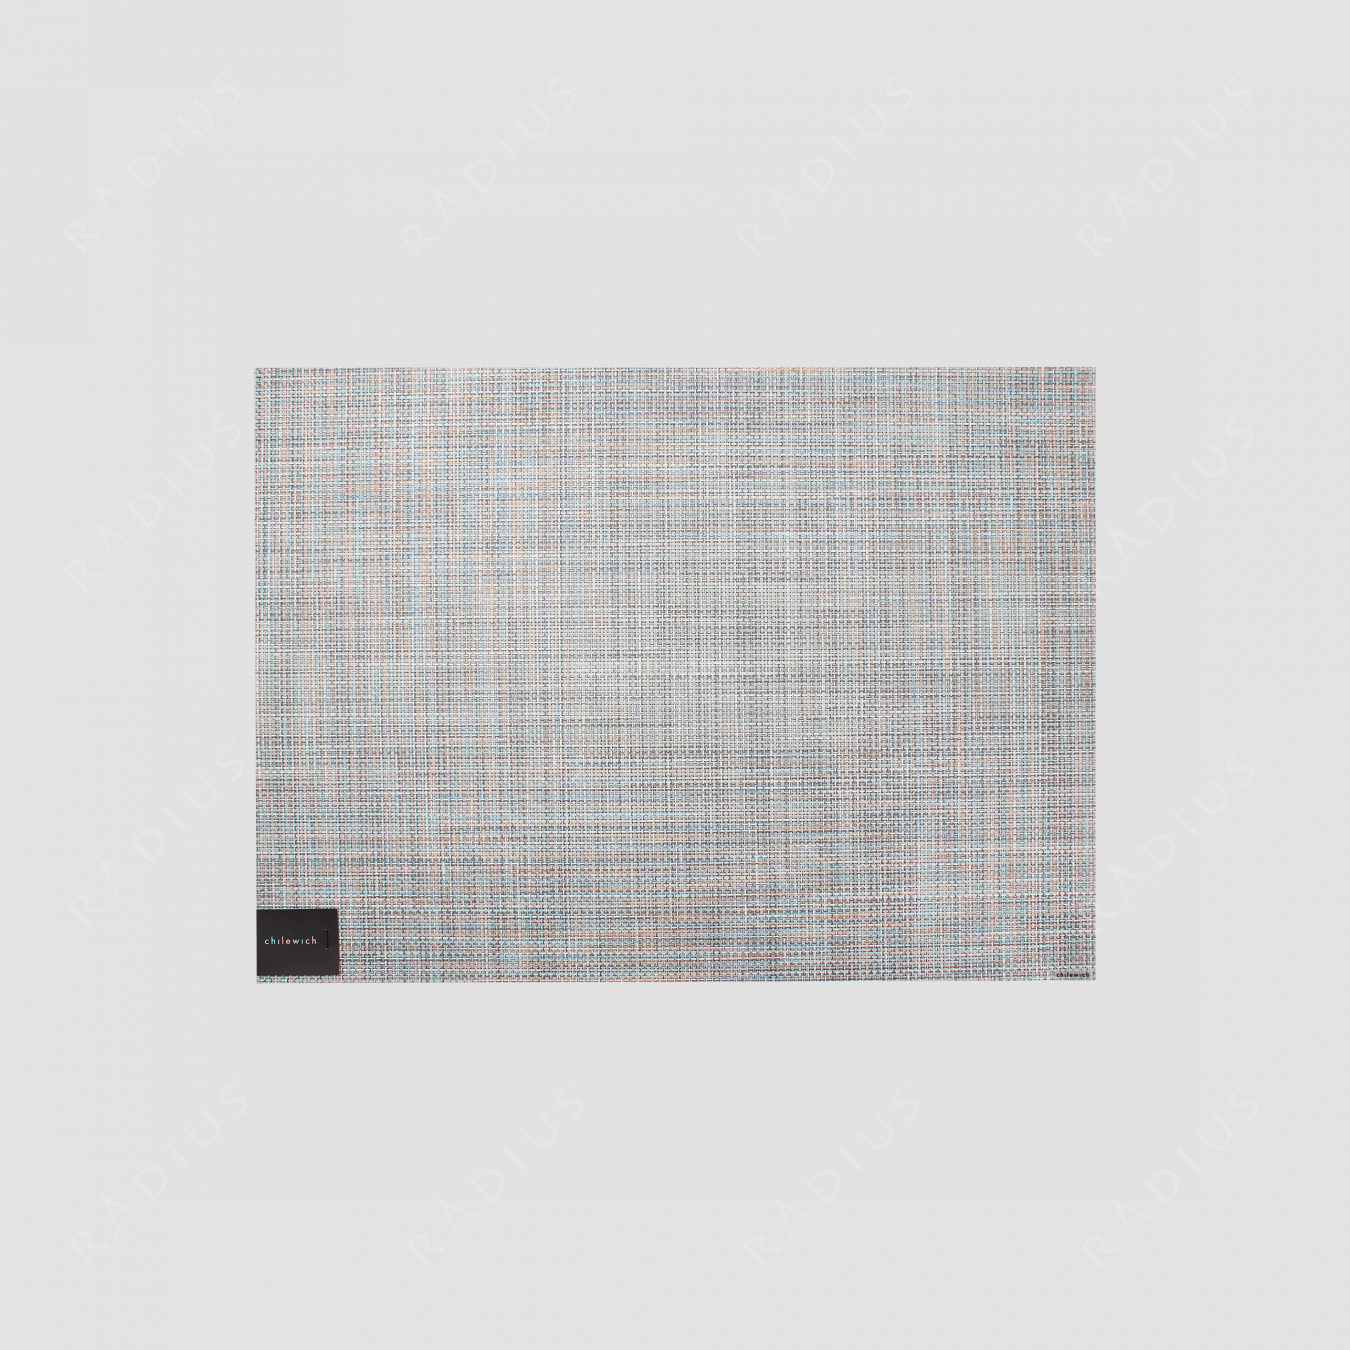 Салфетка подстановочная, жаккардовое плетение, винил, (36х48), Mist, серия Mini Basketweave, CHILEWICH, США